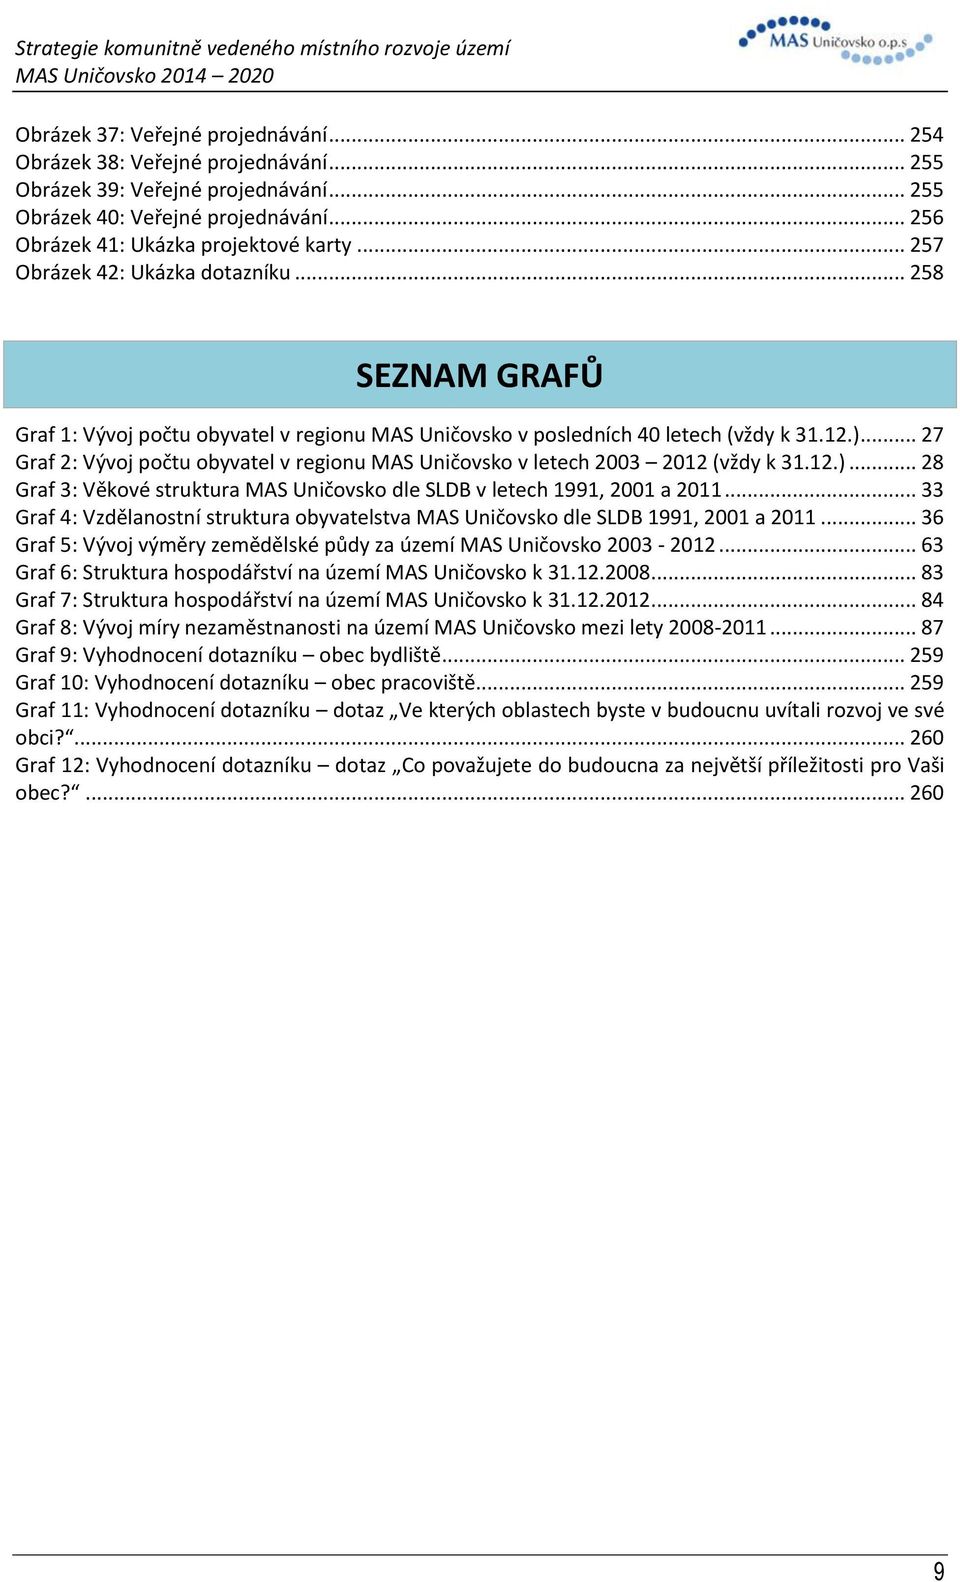 .. 27 Graf 2: Vývoj počtu obyvatel v regionu MAS Uničovsko v letech 2003 2012 (vždy k 31.12.)... 28 Graf 3: Věkové struktura MAS Uničovsko dle SLDB v letech 1991, 2001 a 2011.